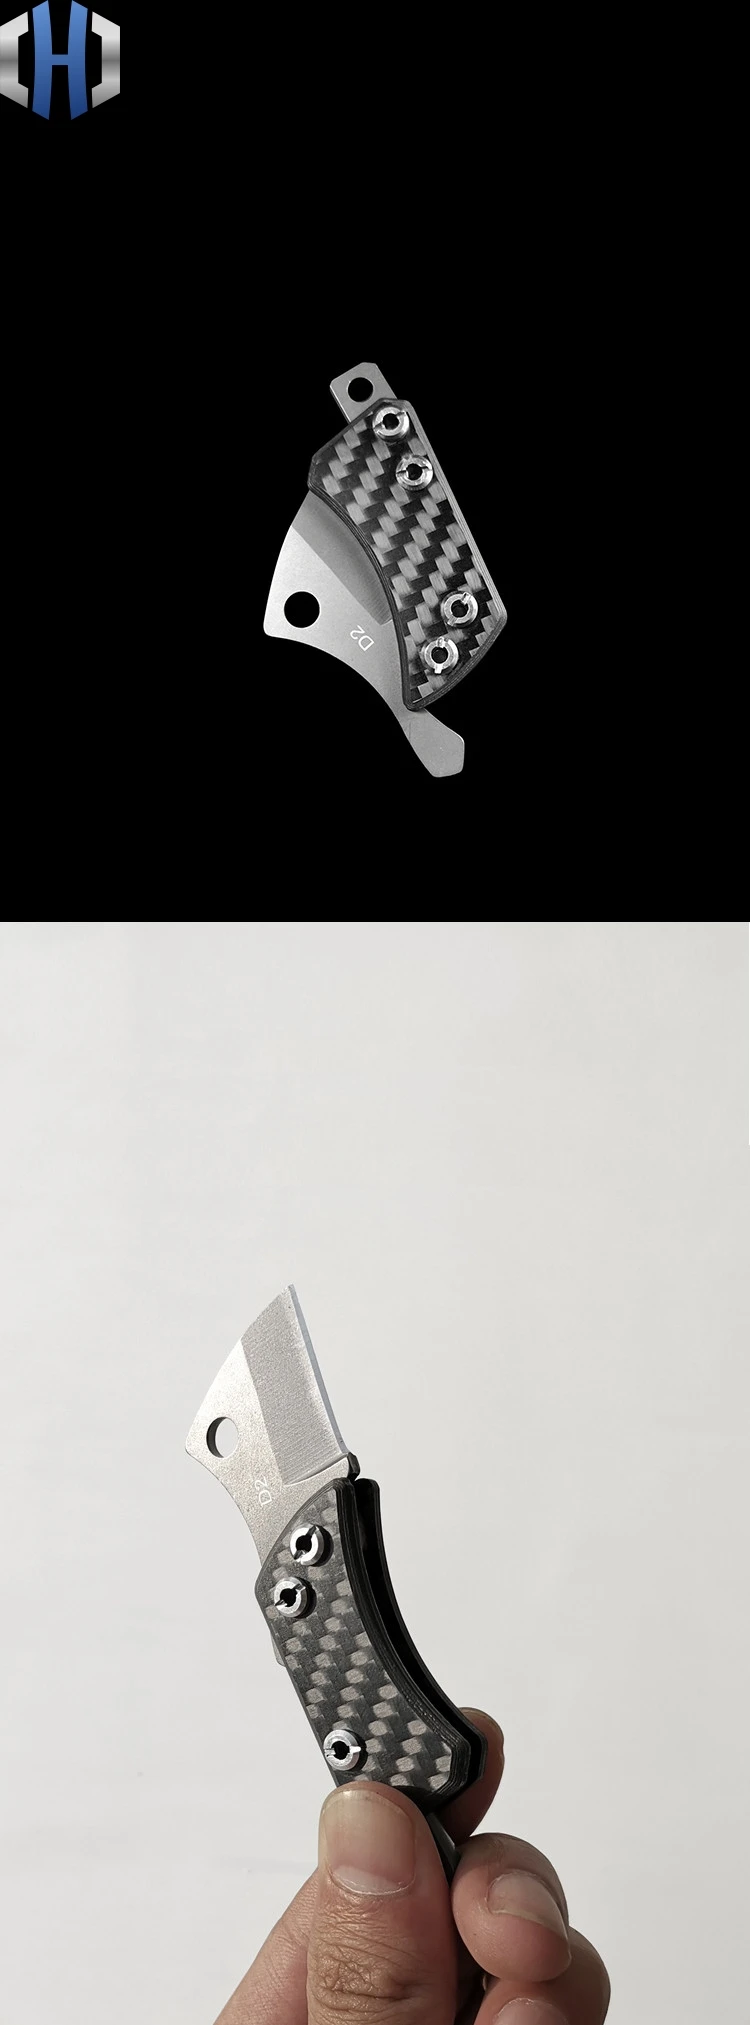 Углеродное волокно мини складной острый нож удобный портативный самообороны Сплит Экспресс титана цветной брелок